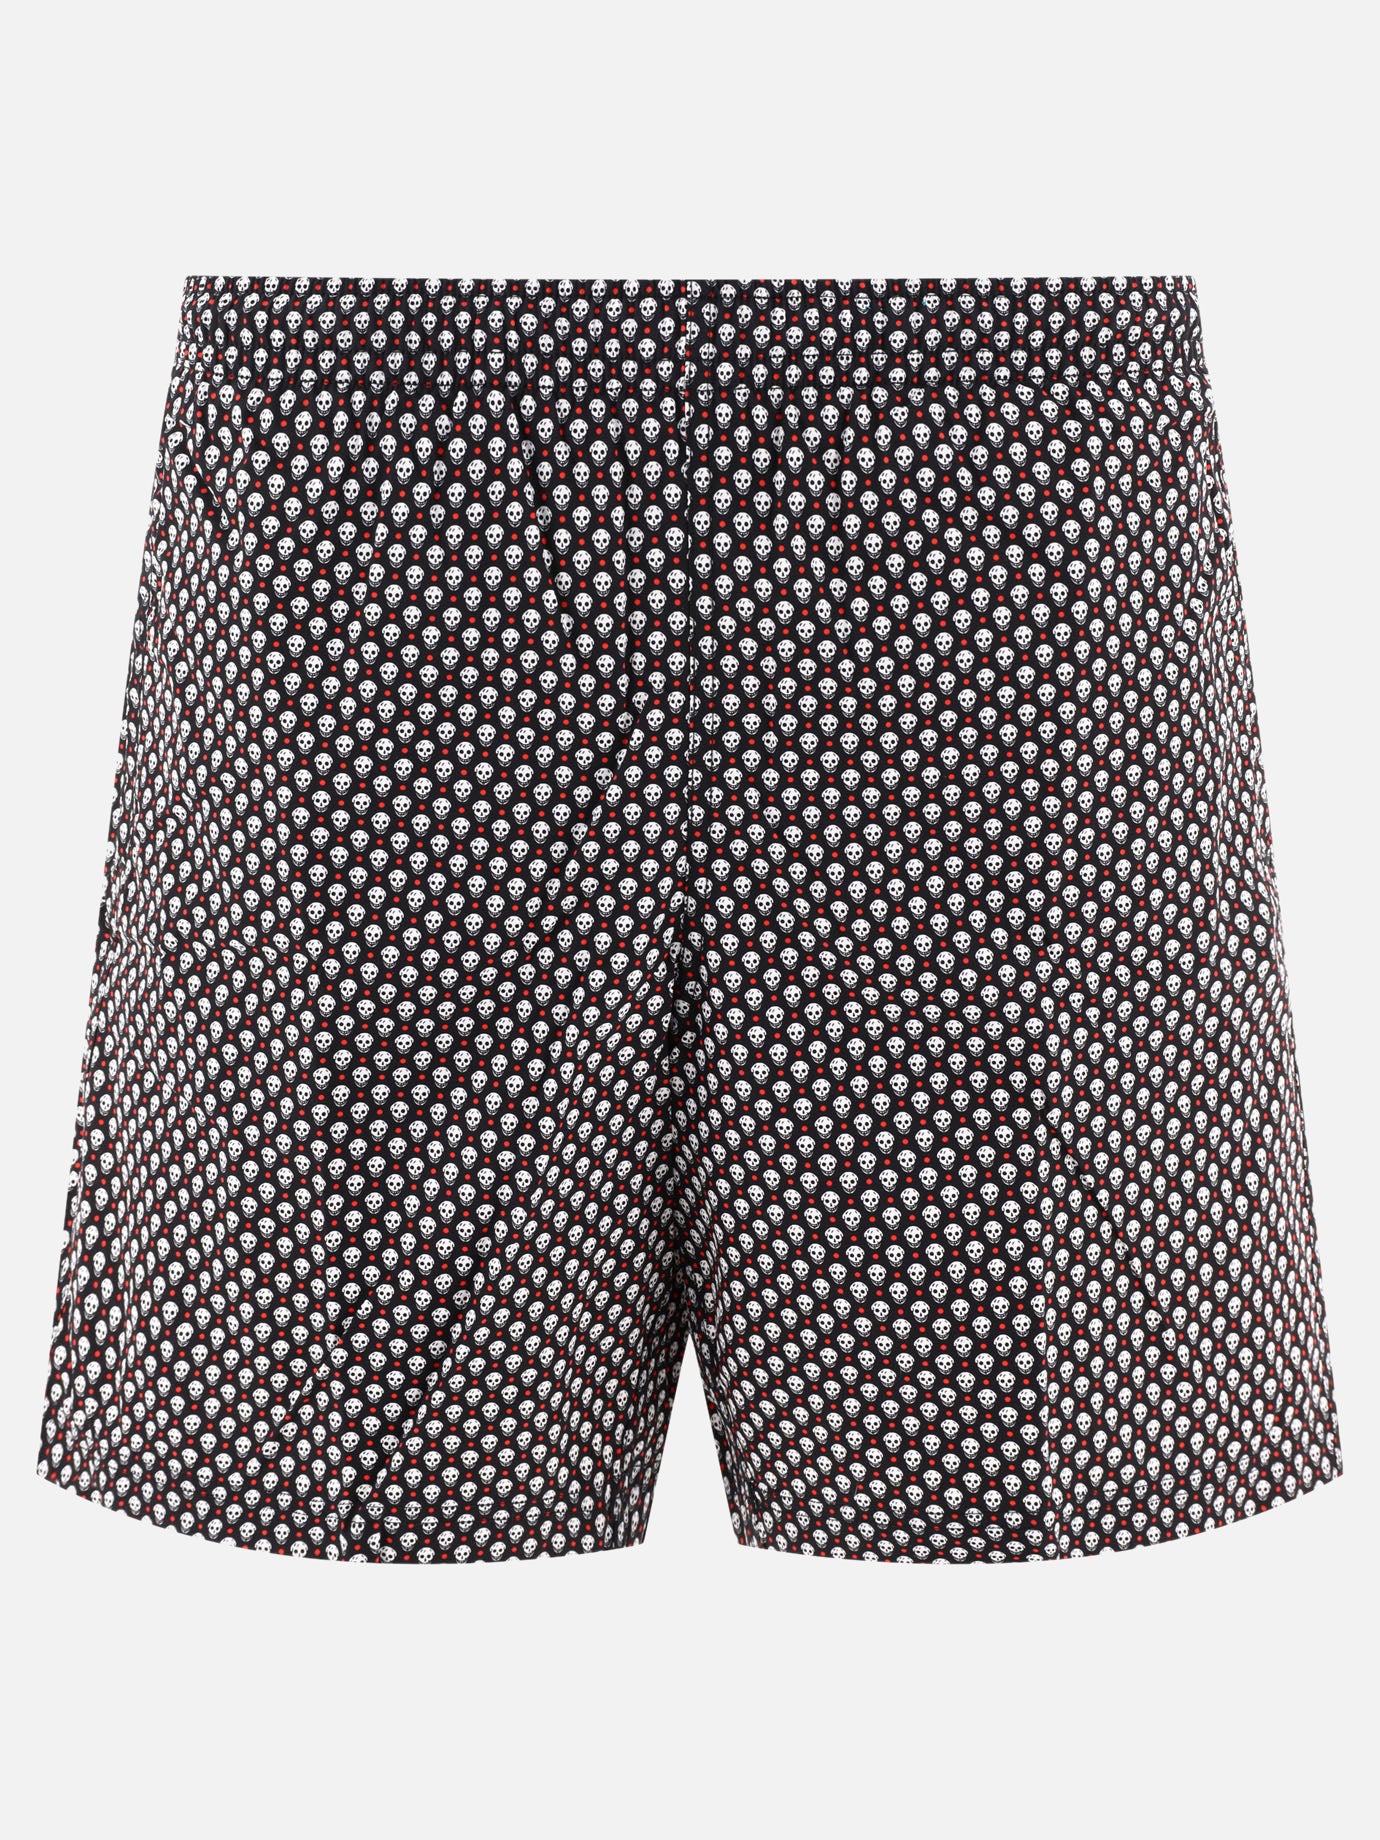 "Skull Dots" swim shorts